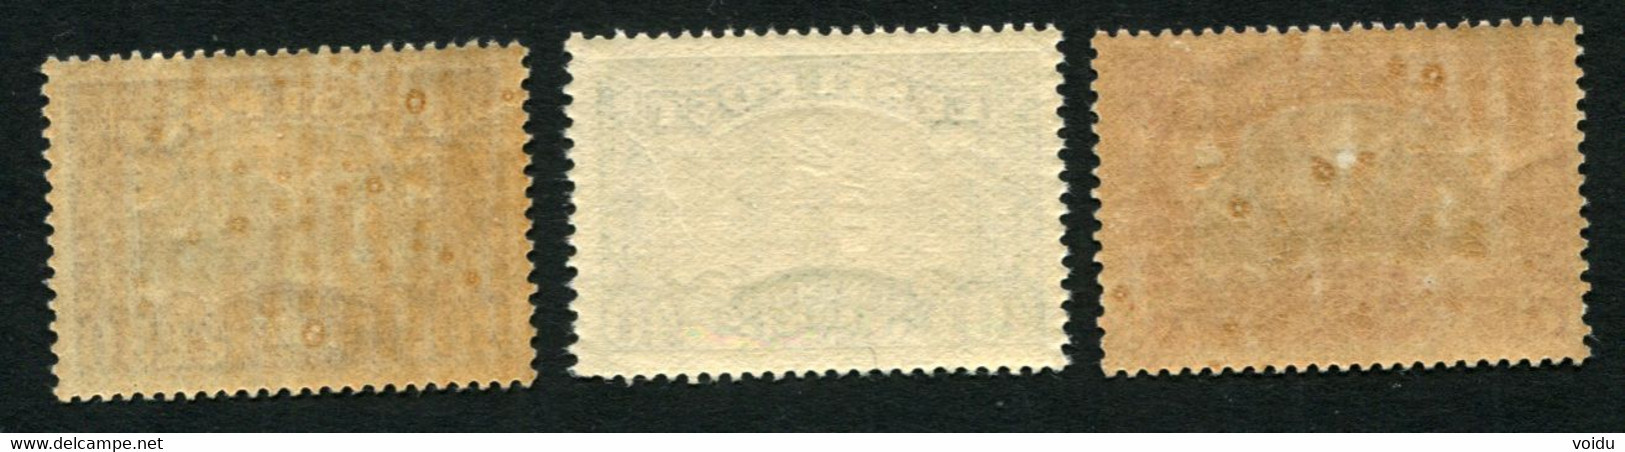 Estonia . 1924 Mi 55-56,62 MNH ** - Estonia